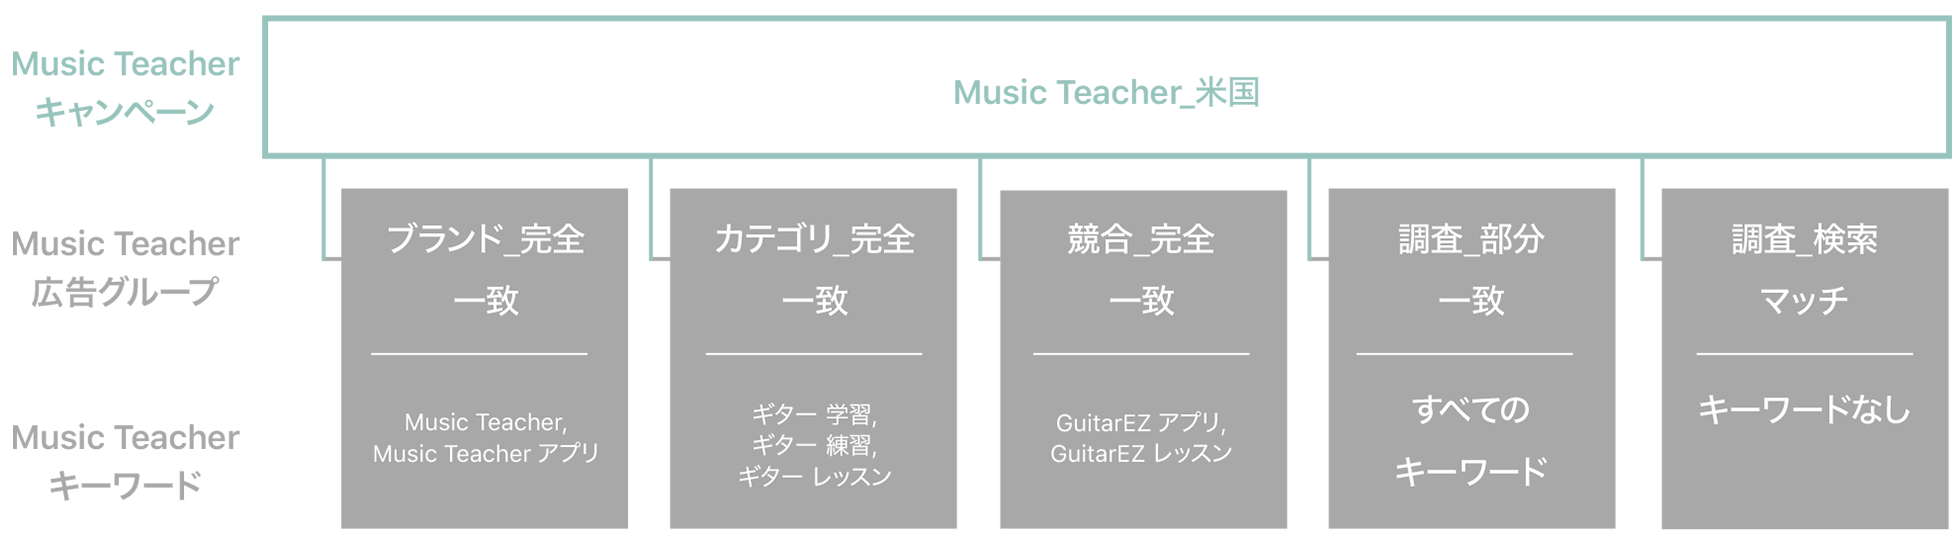 「Music Teacher_US」と名付けられたサンプルキャンペーンの図。1行目はMusic Teacherキャンペーン、2行目はMusic Teacher広告グループ、3行目はMusic Teacherキーワードを示している。Music Teacher_USキャンペーンは、次の広告グループとキーワードに紐づいている。ブランド_完全一致（キーワードは「Music Teacher」と「Music Teacher App」）、カテゴリ_完全一致（キーワードは「learn guitar」、「guitar teacher」、「guitar lessons」）、競合_完全一致（キーワードは「GuitarEZ App」と「GuitarEZ lessons」）、調査_部分一致（すべてのキーワード）、調査_検索マッチ（キーワードなし）。